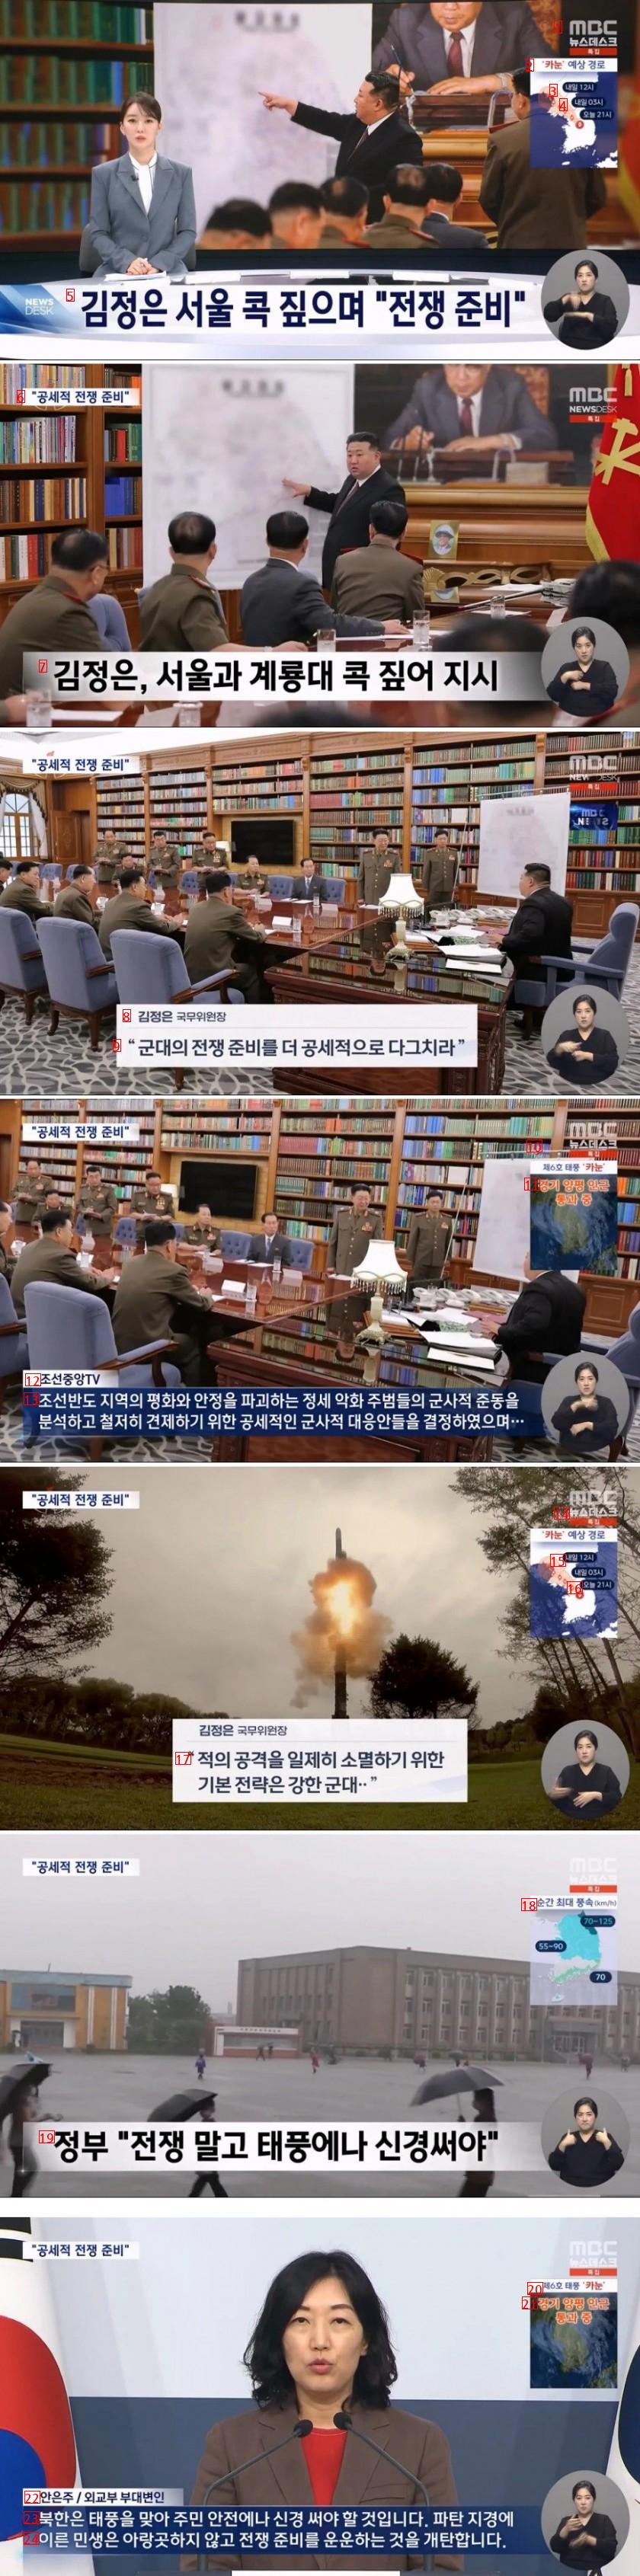 北朝鮮、ソウルに戦争準備VS韓国台風に気をつけろ